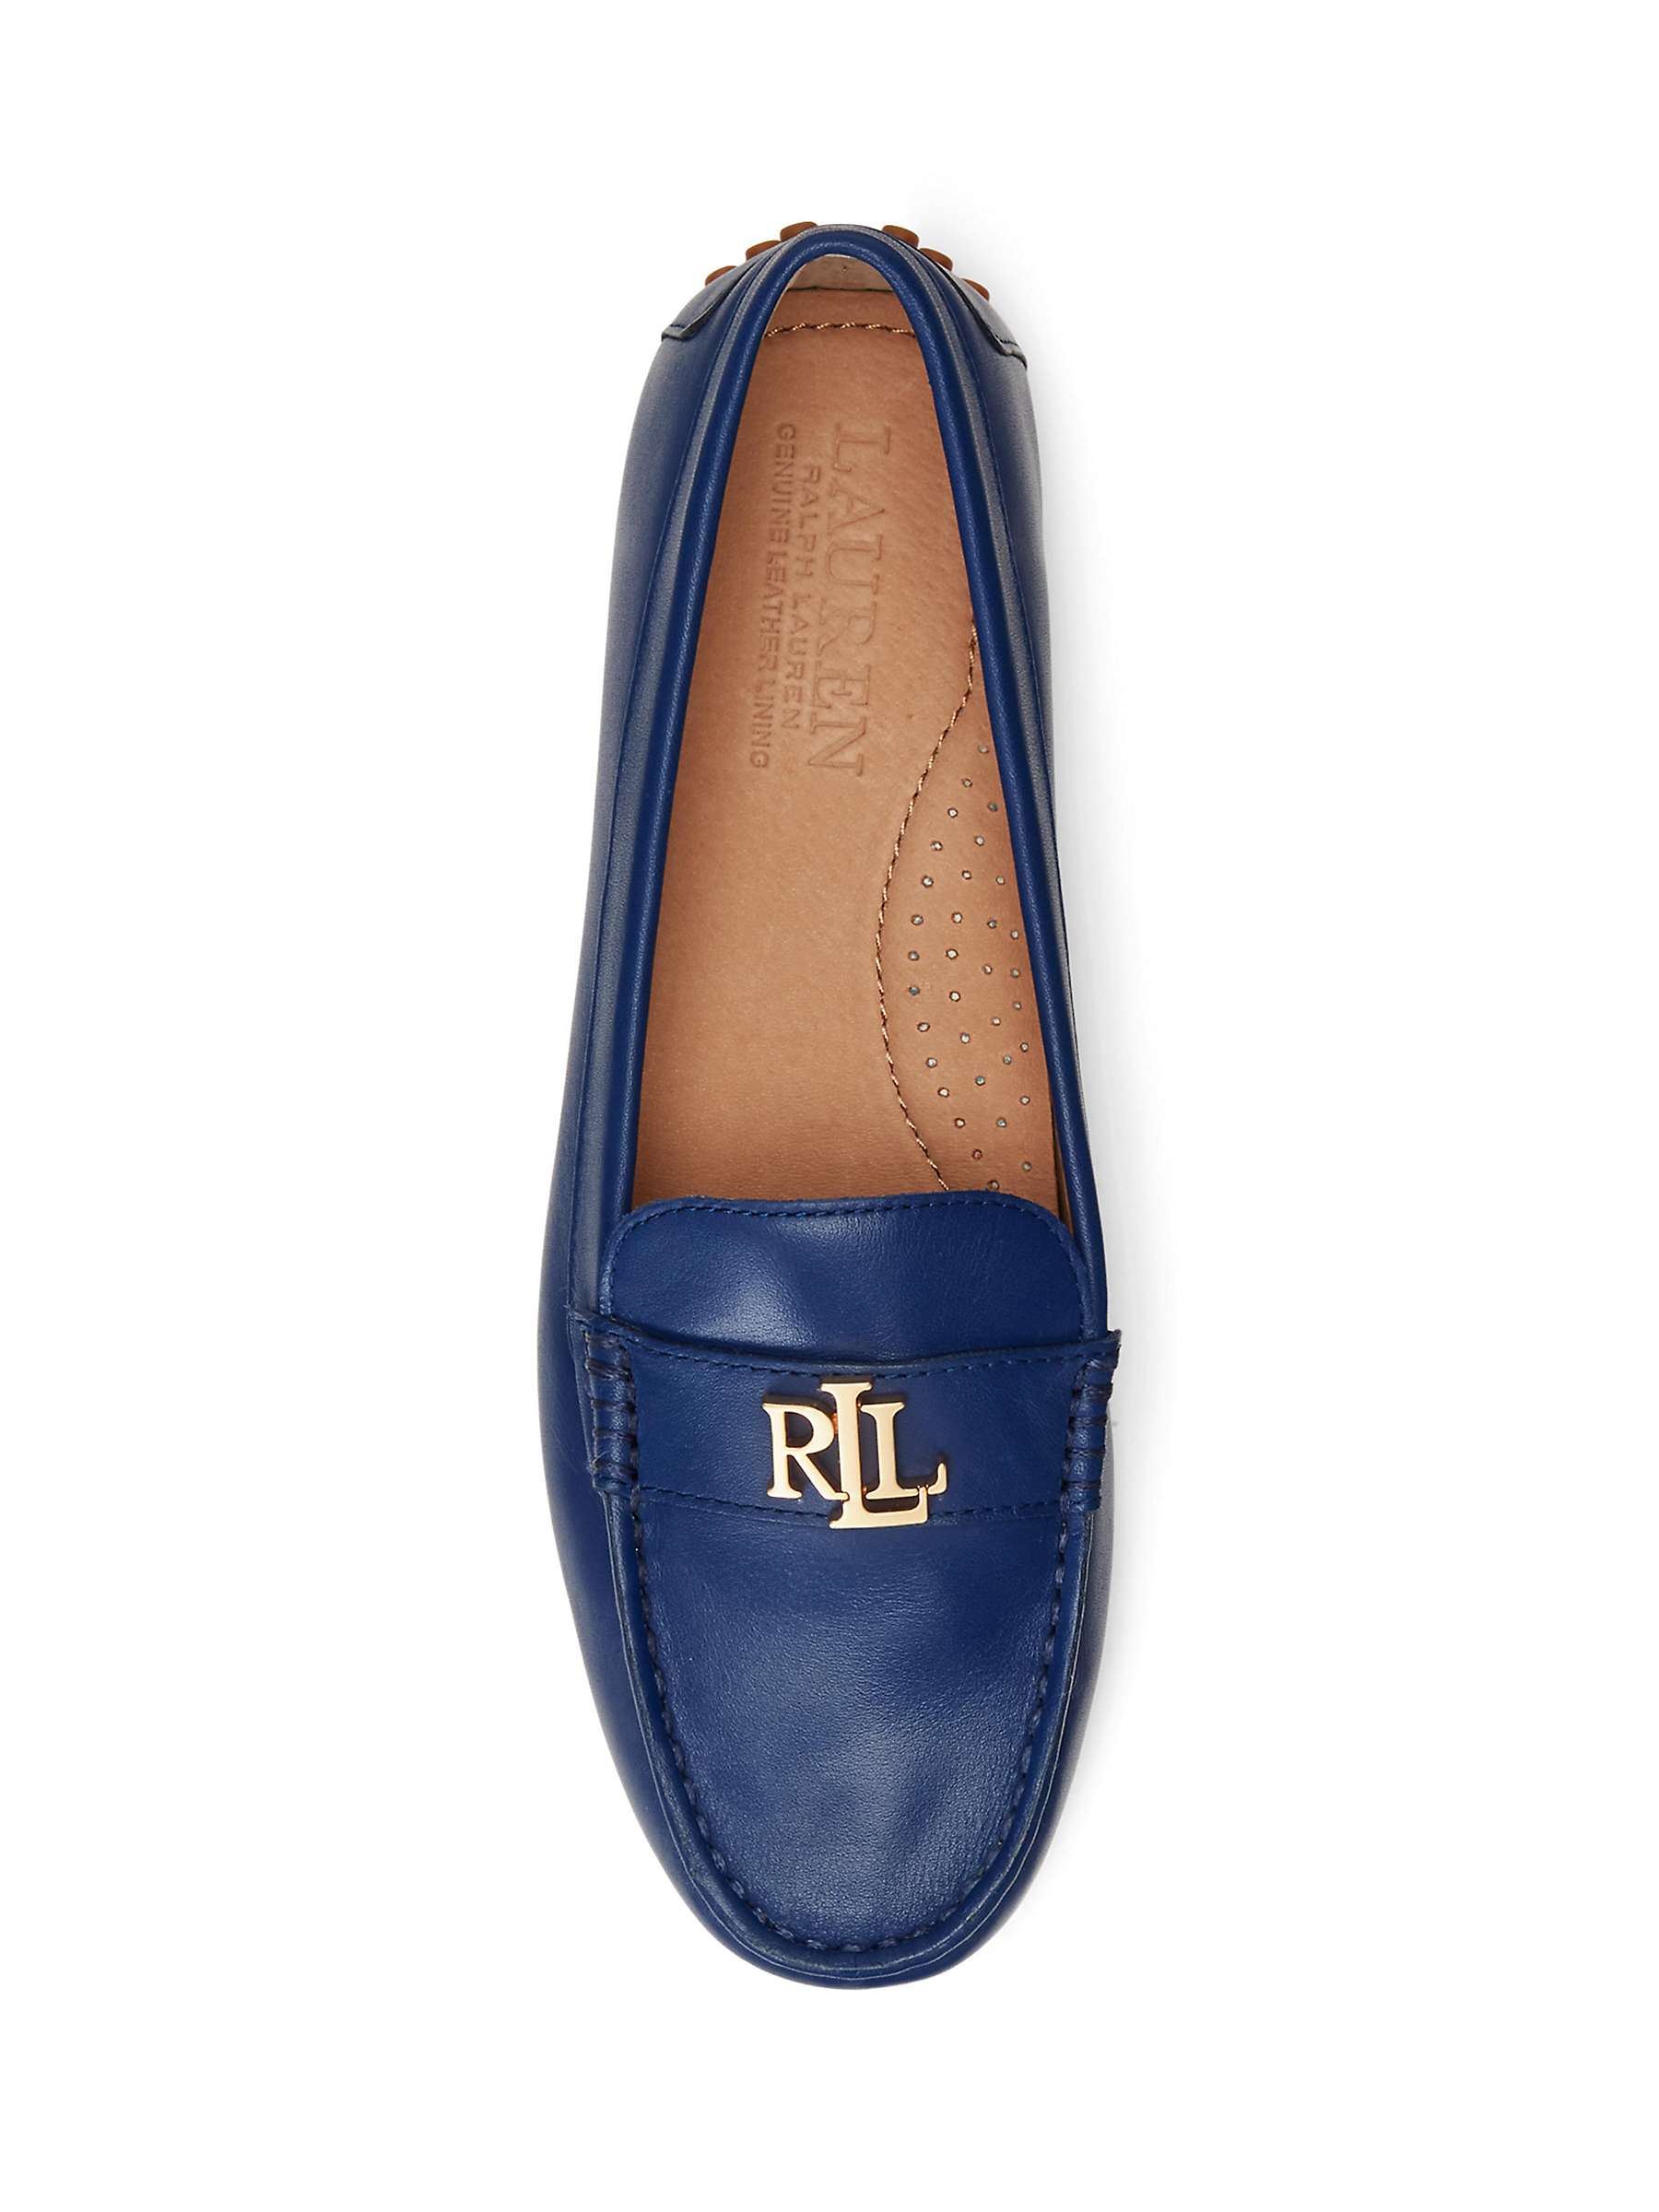 Buy Lauren Ralph Lauren Barnsbury Nappa Leather Driver Loafers Online at johnlewis.com